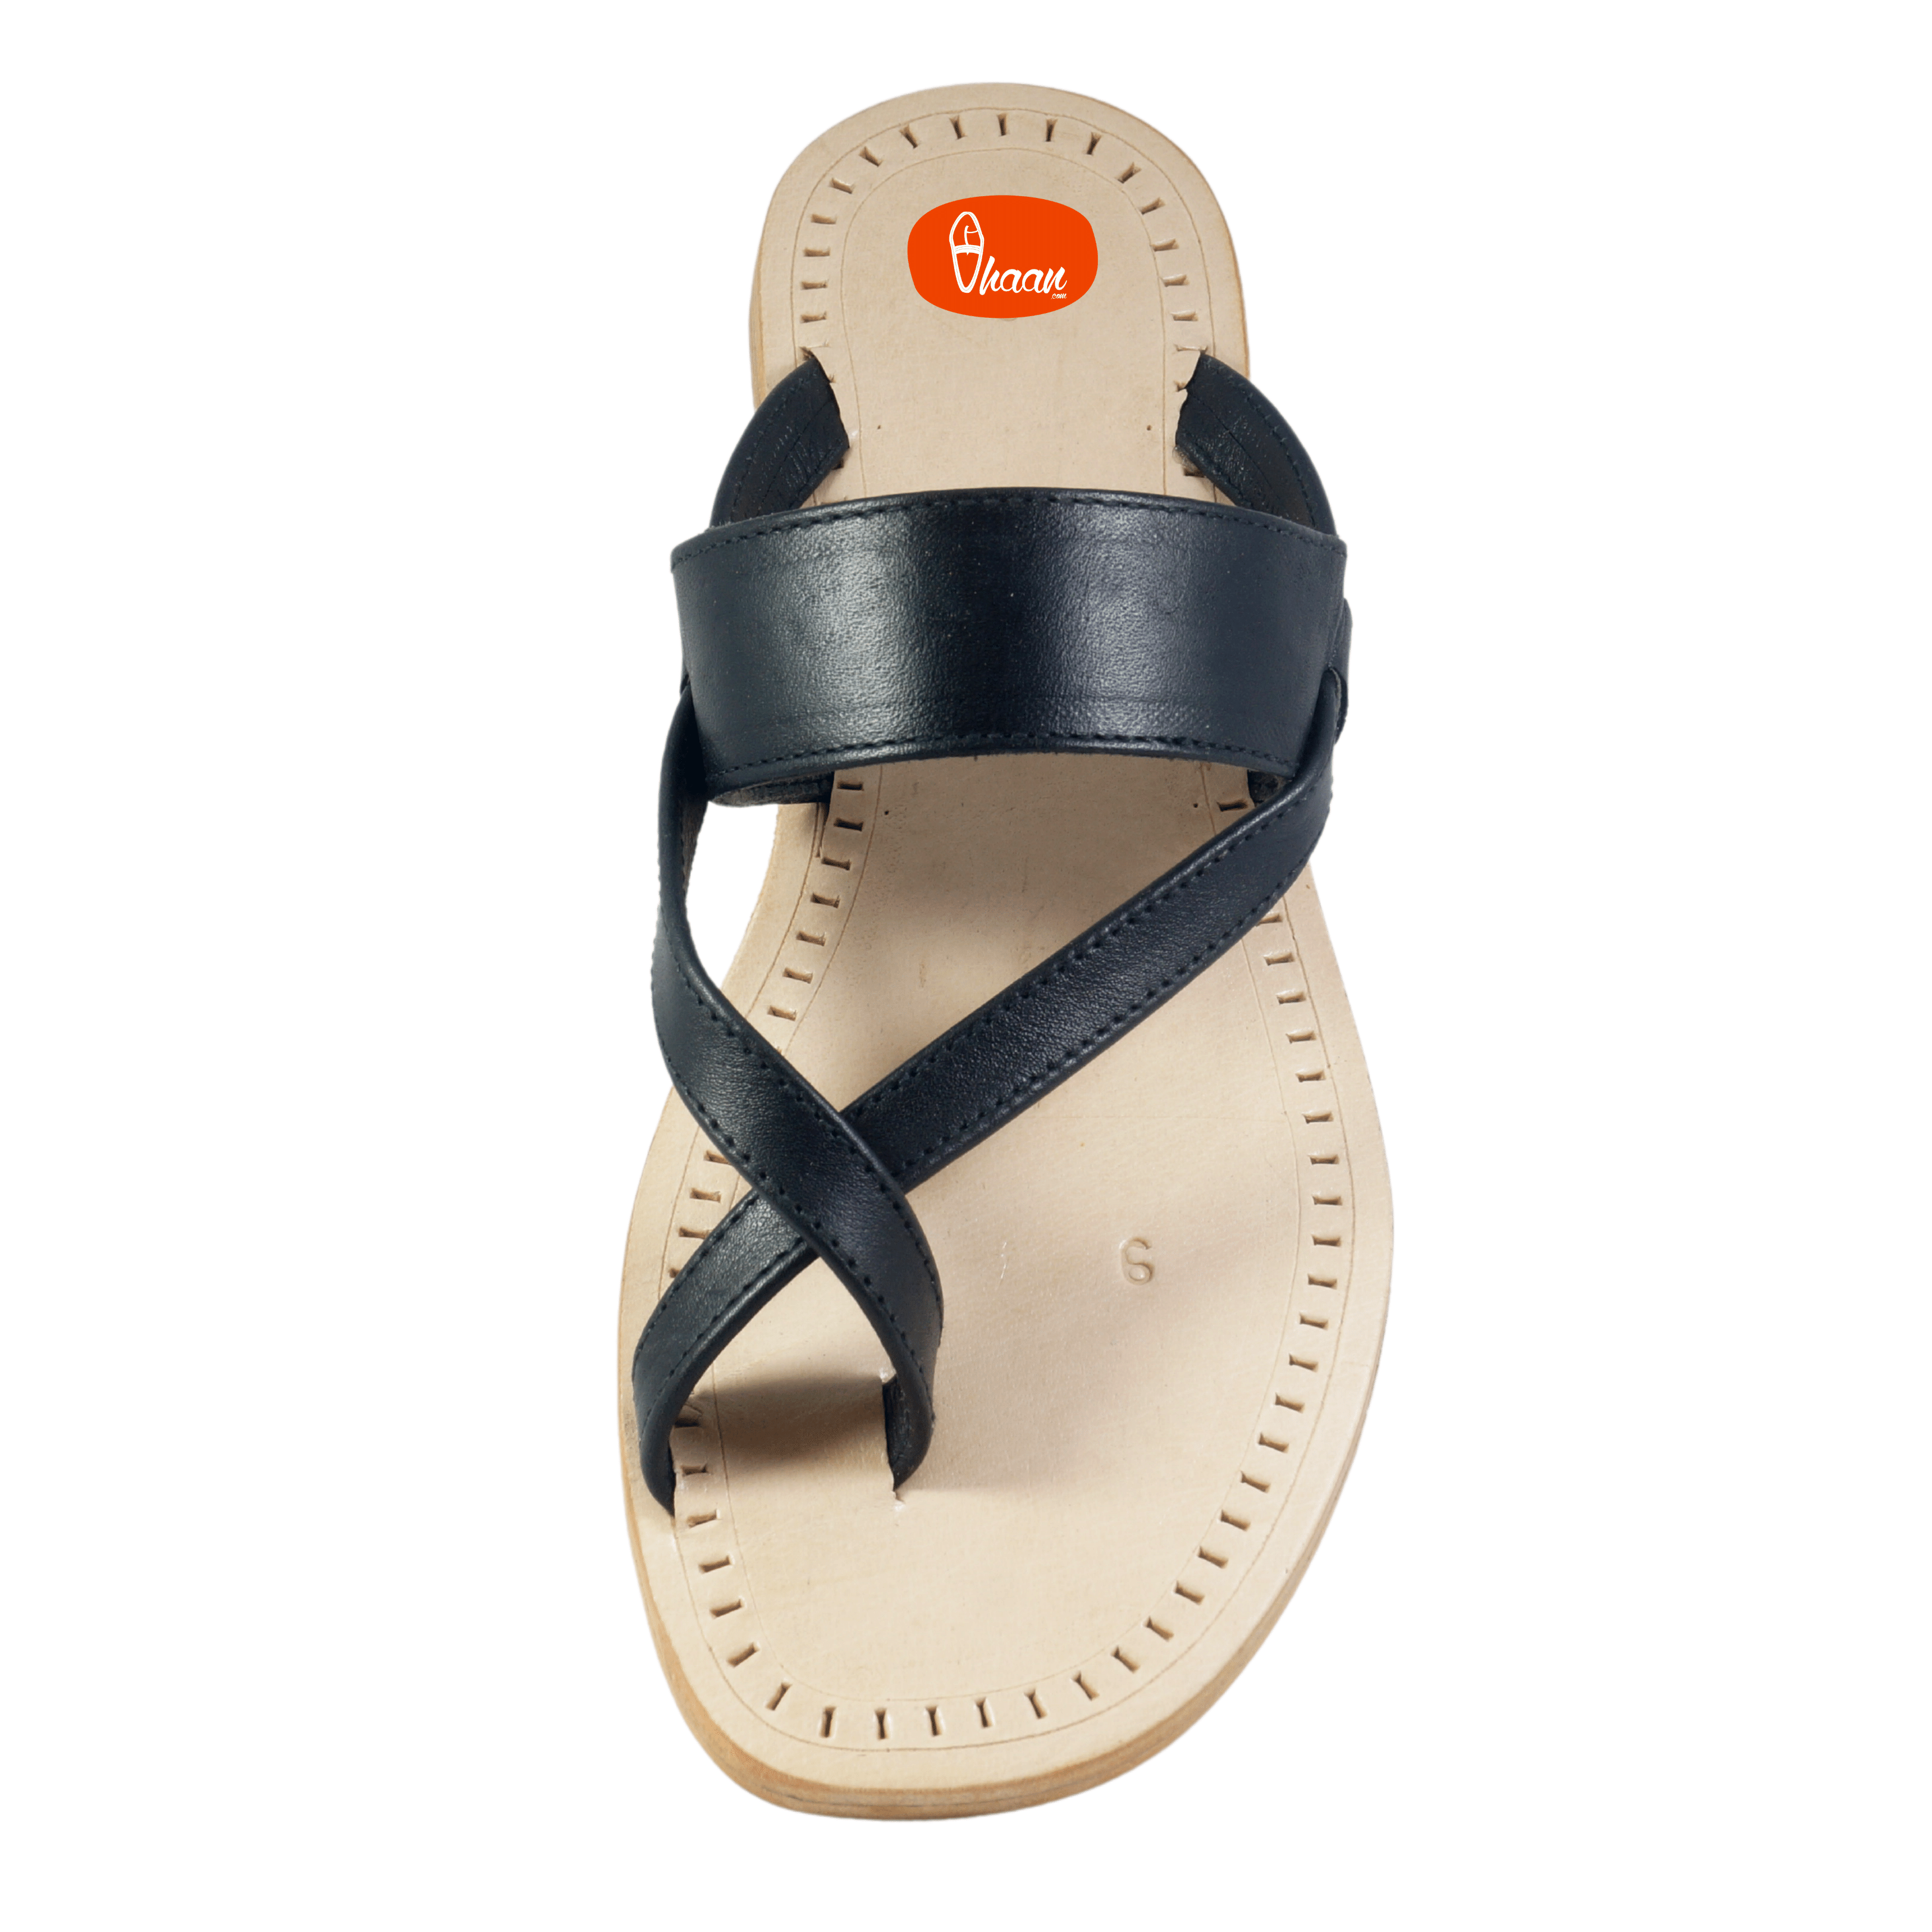 सैंडल समर बीच मेन ब्रांड के पुरुष सैंडल की नई डिजाइन - चीन लड़का सैंडल यह  है लड़की सैंडल कीमत